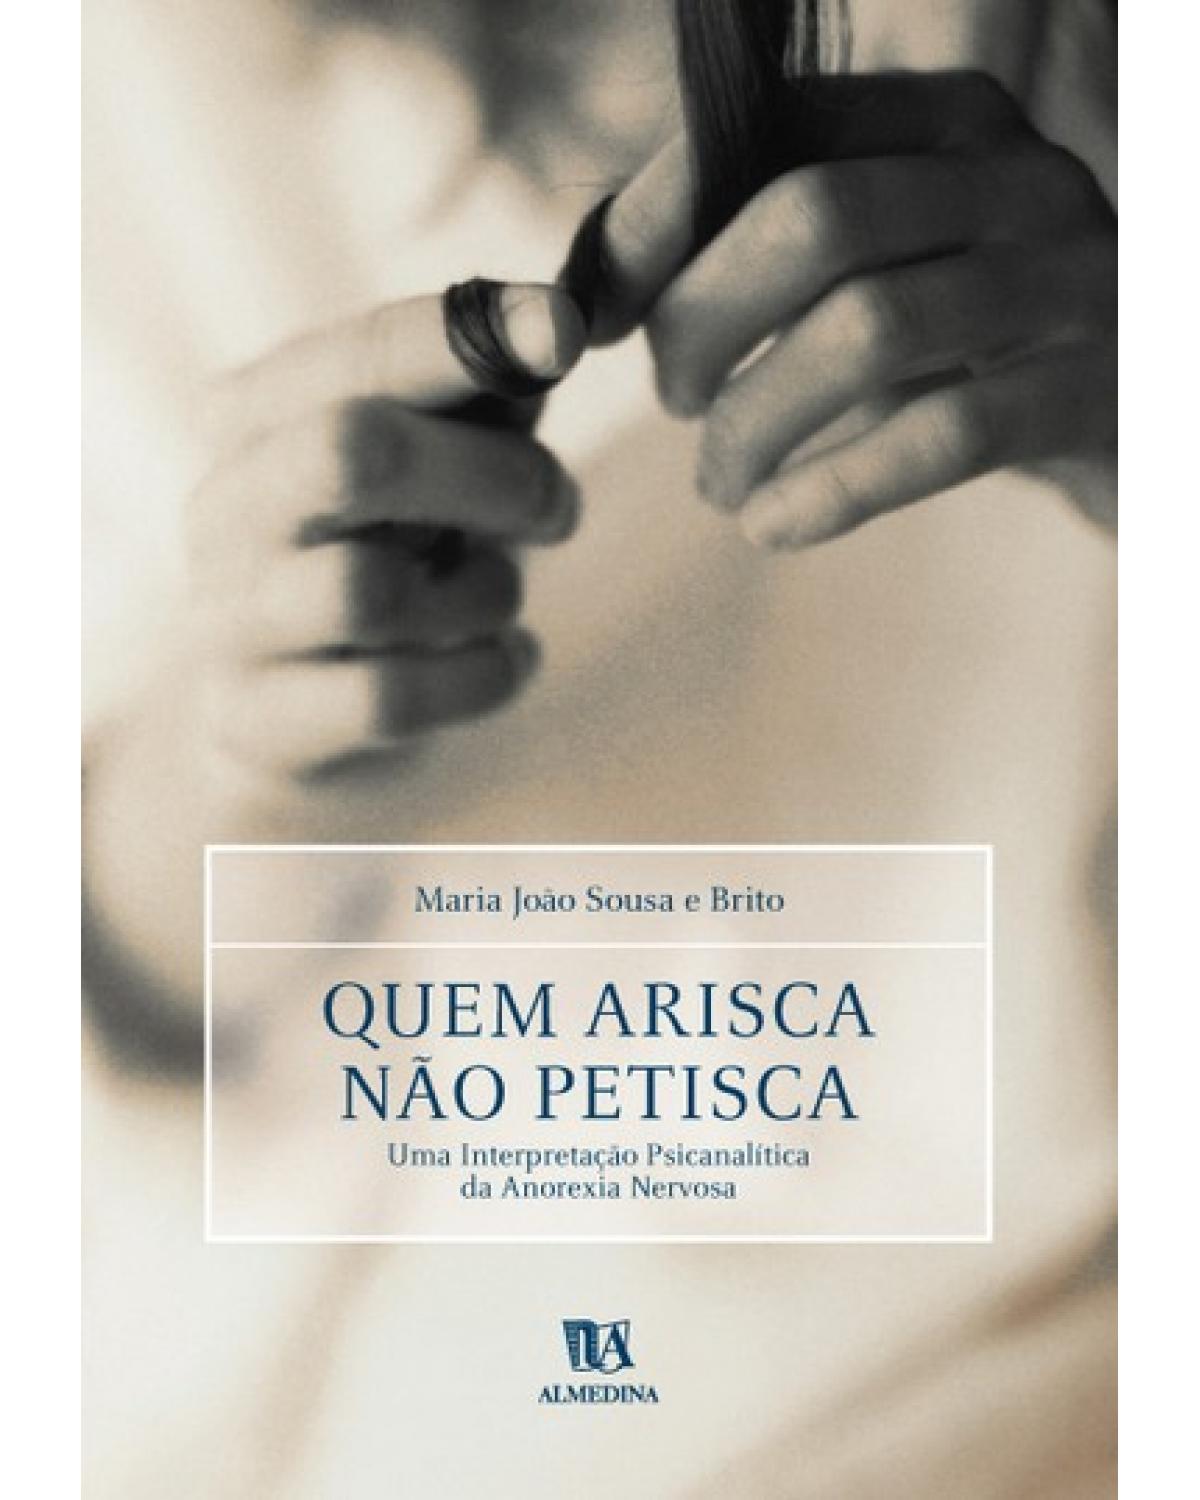 Quem arisca não petisca - uma interpretação psicanalítica da anorexia nervosa - 1ª Edição | 2001